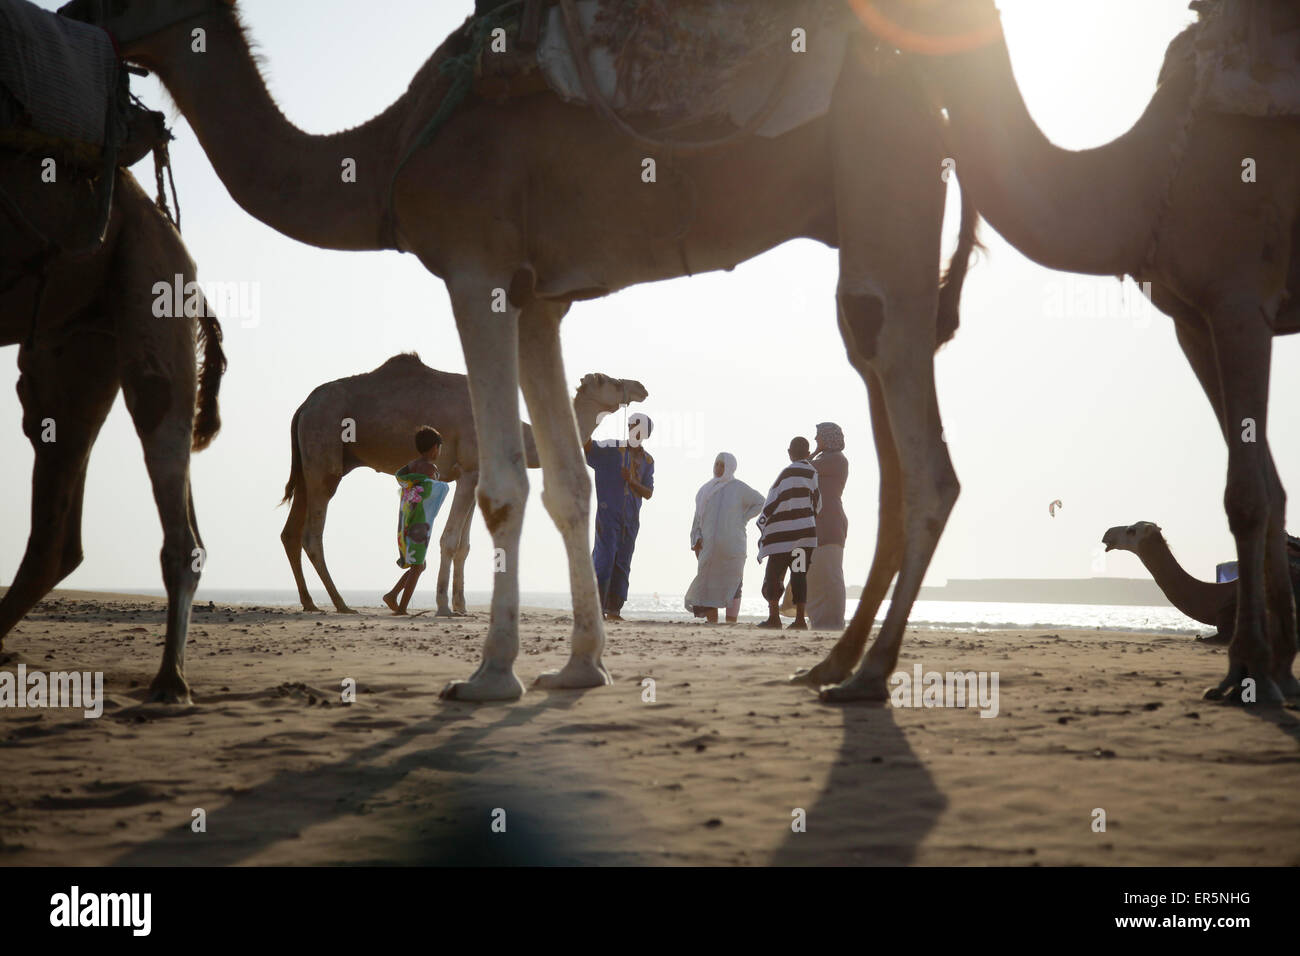 Groupe de personnes et des dromadaires à plage, Essaouira, Maroc Banque D'Images